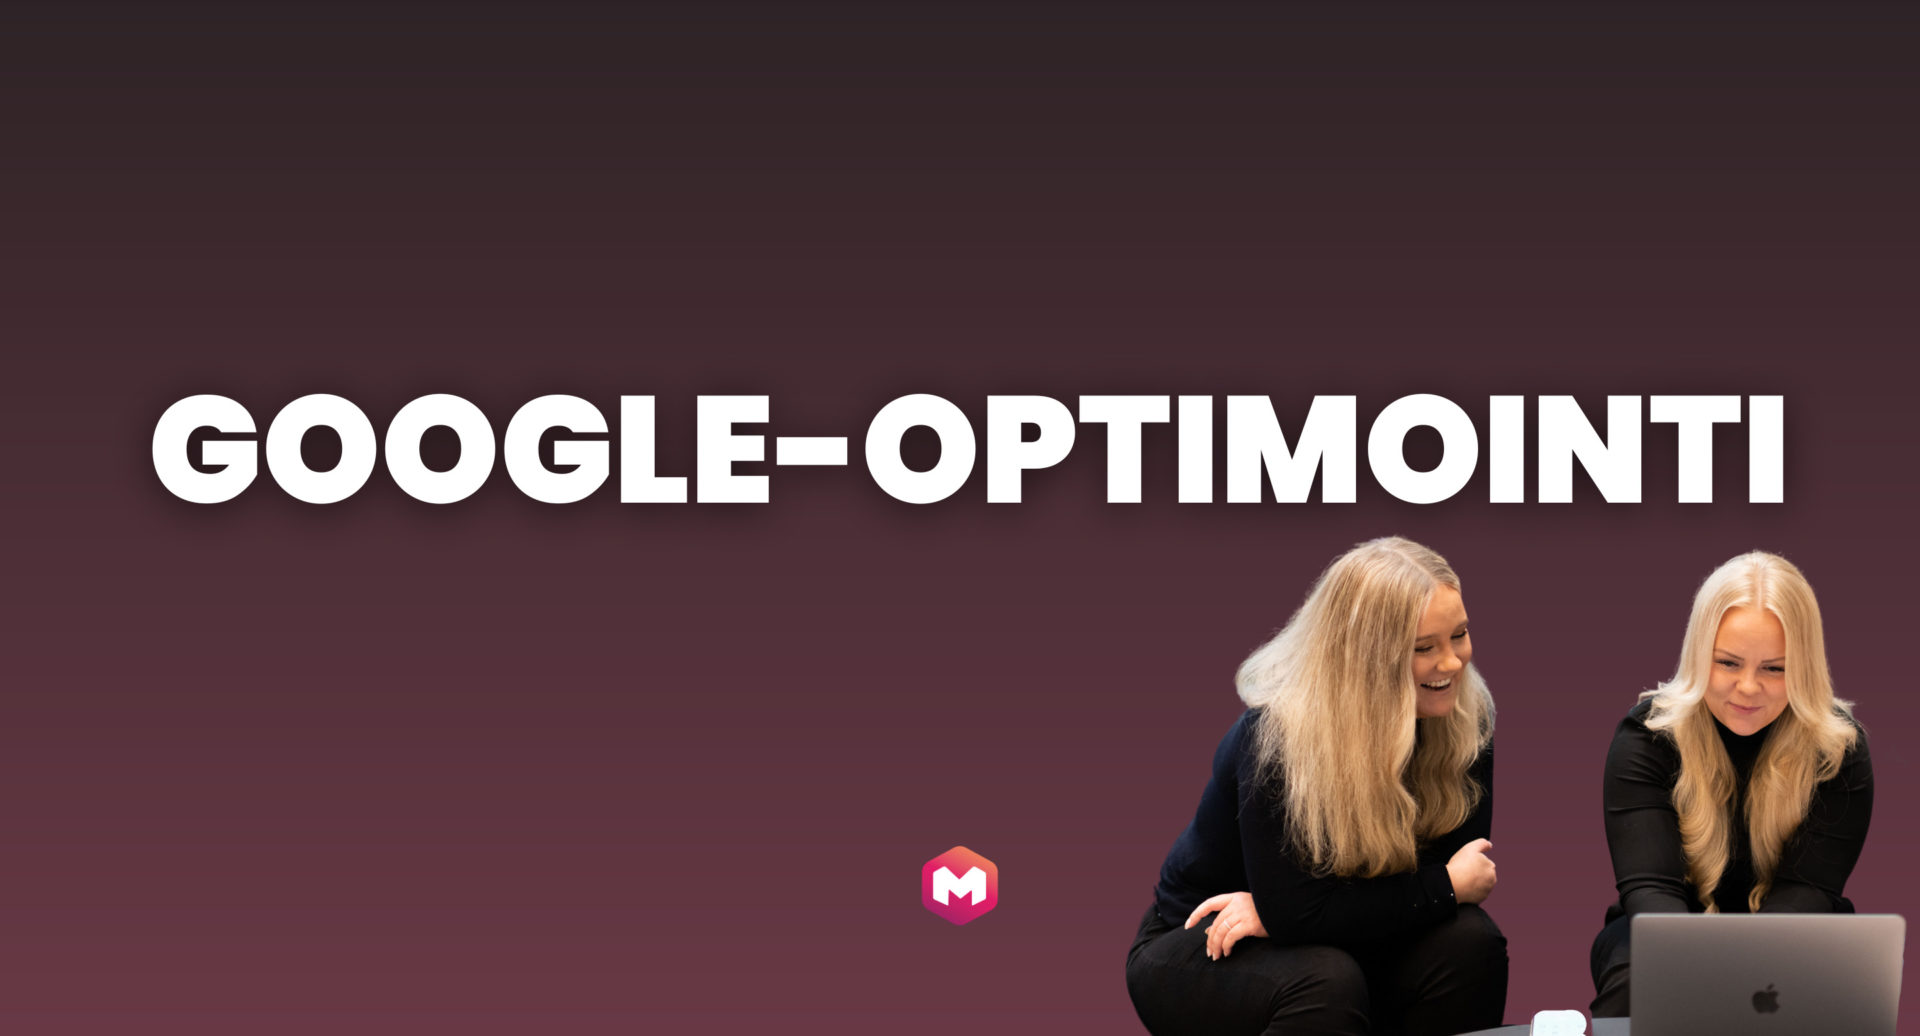 Mitä on Google-optimointi? Kuinka Google-optimointia tehdään?